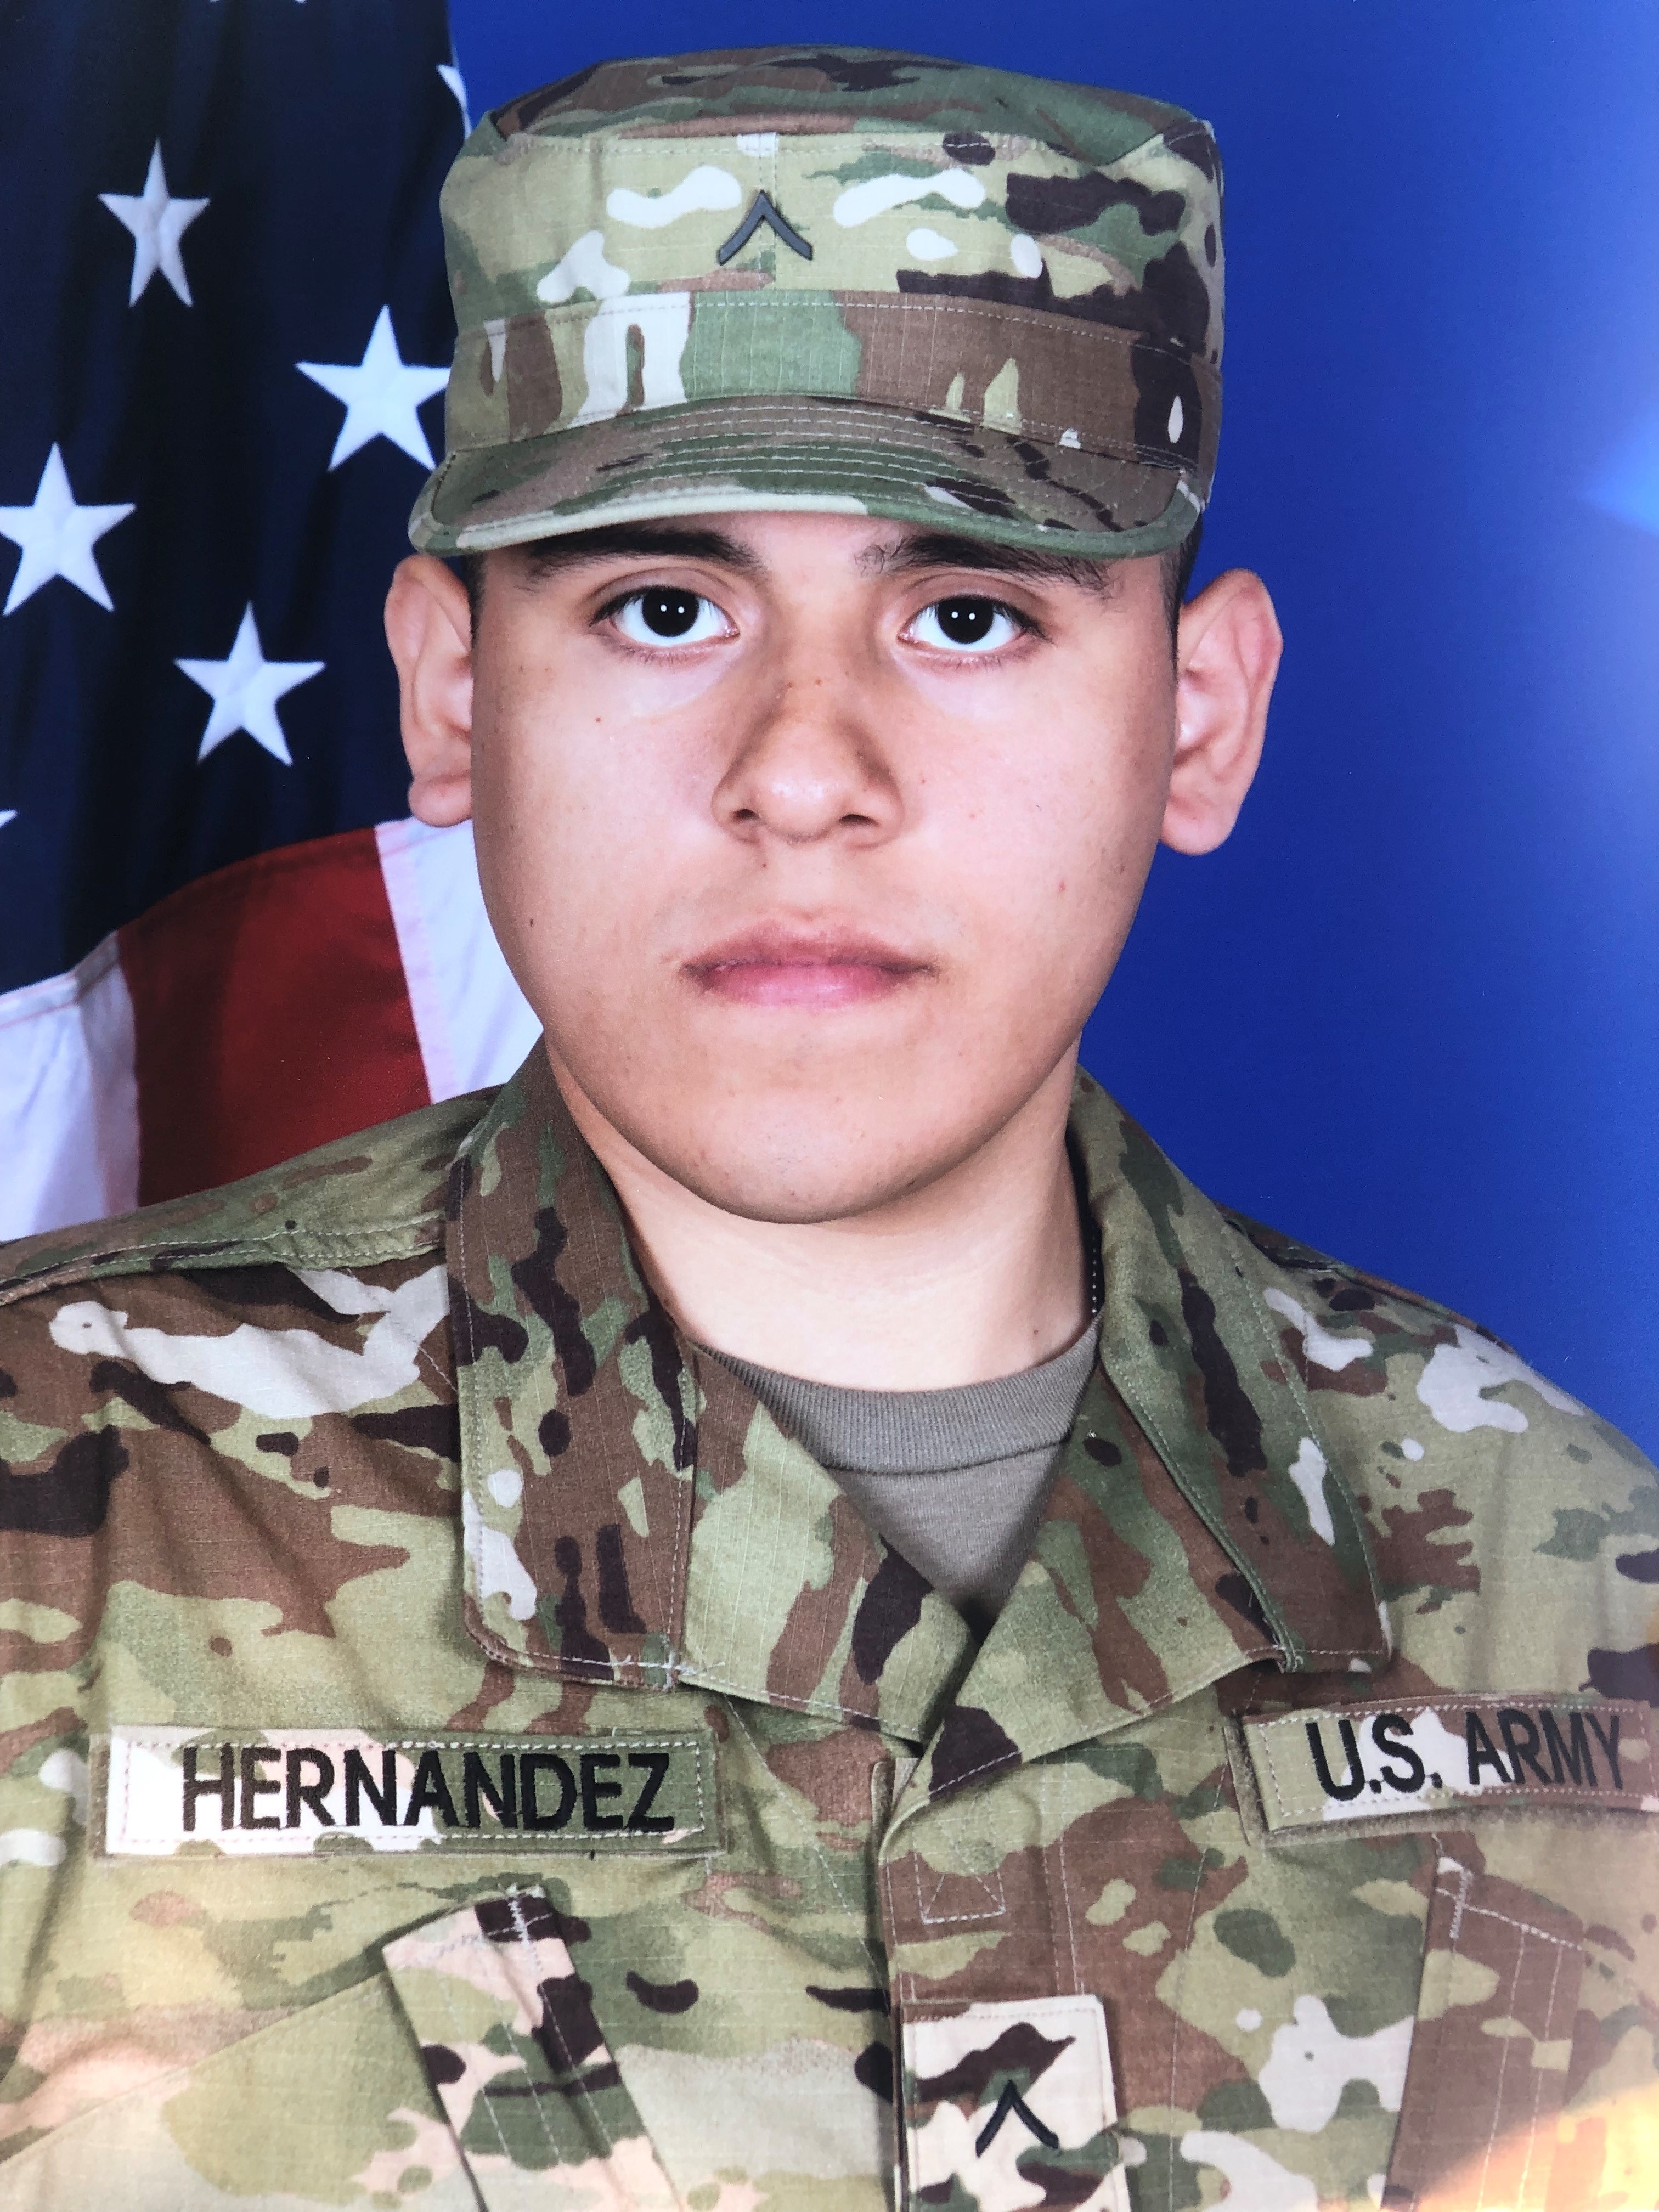 Josué Hernandez army photo